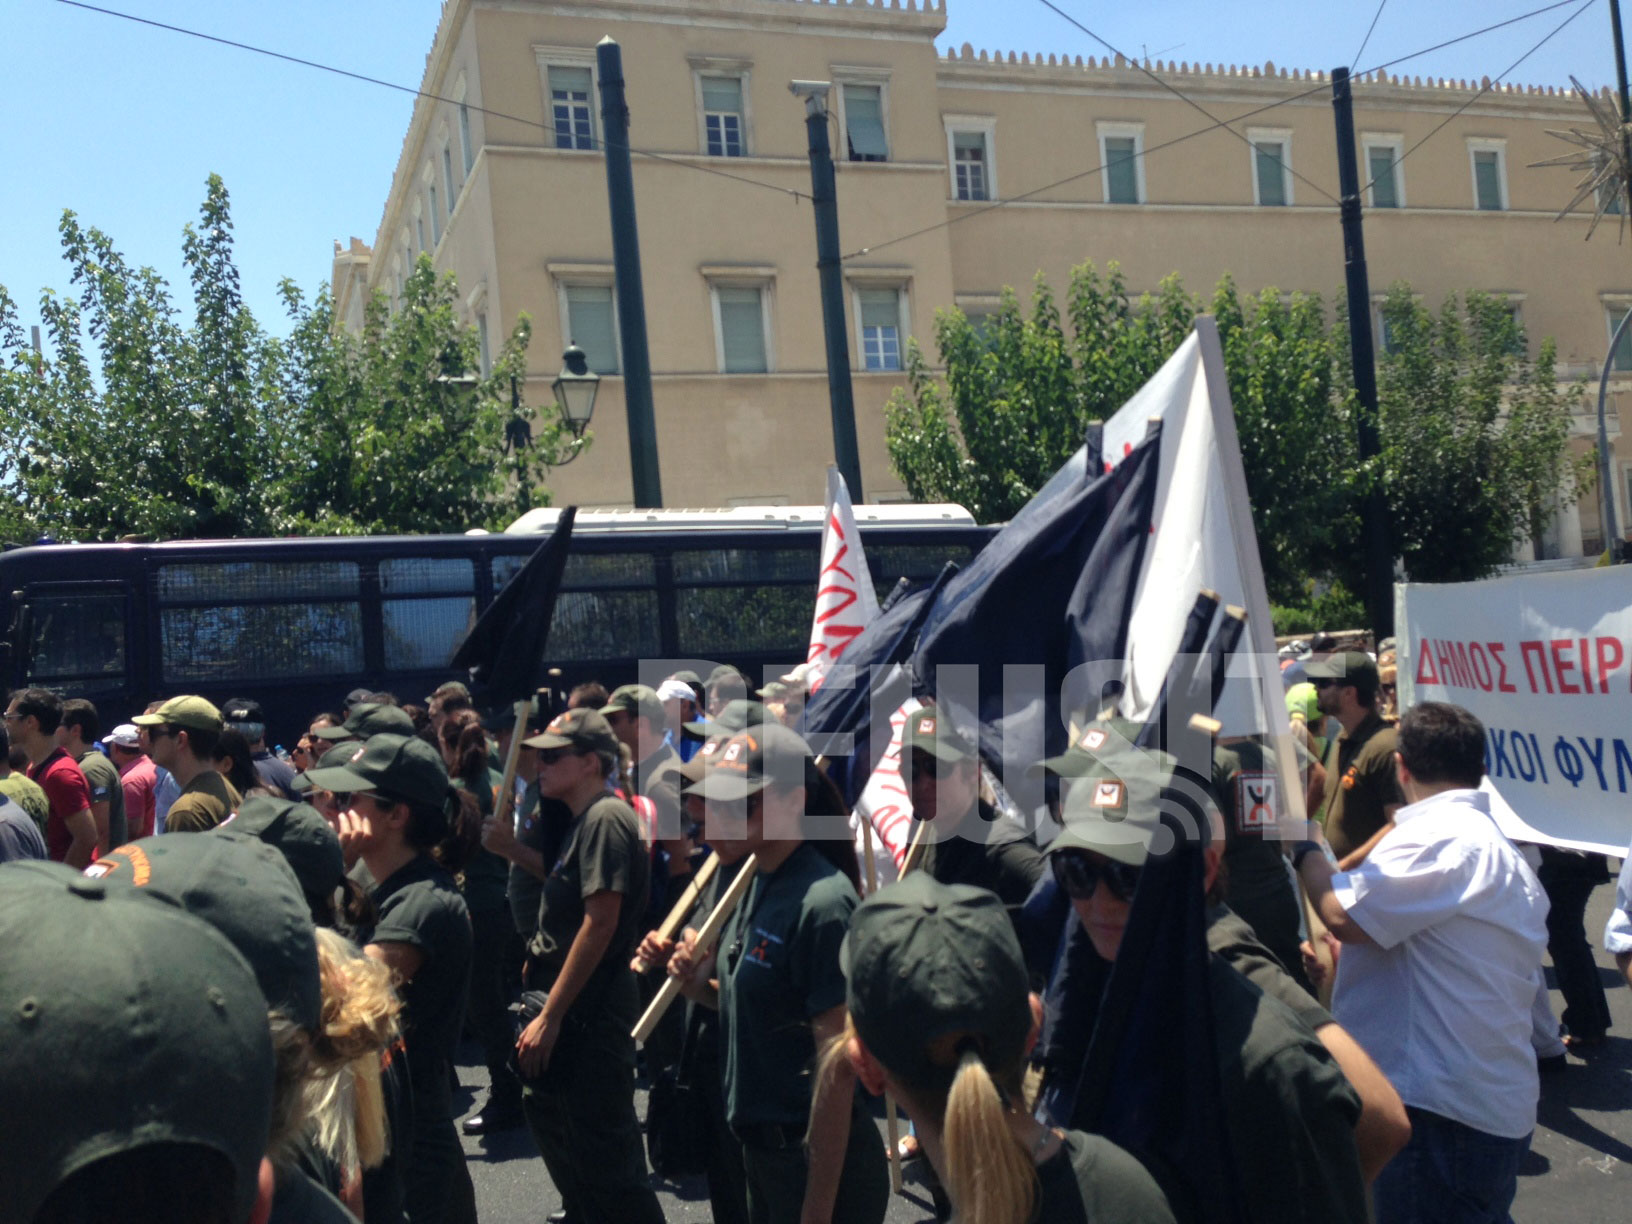 Η πορεία σταμάτησε στου δρόμου τα μισά - ΦΩΤΟ Newsit